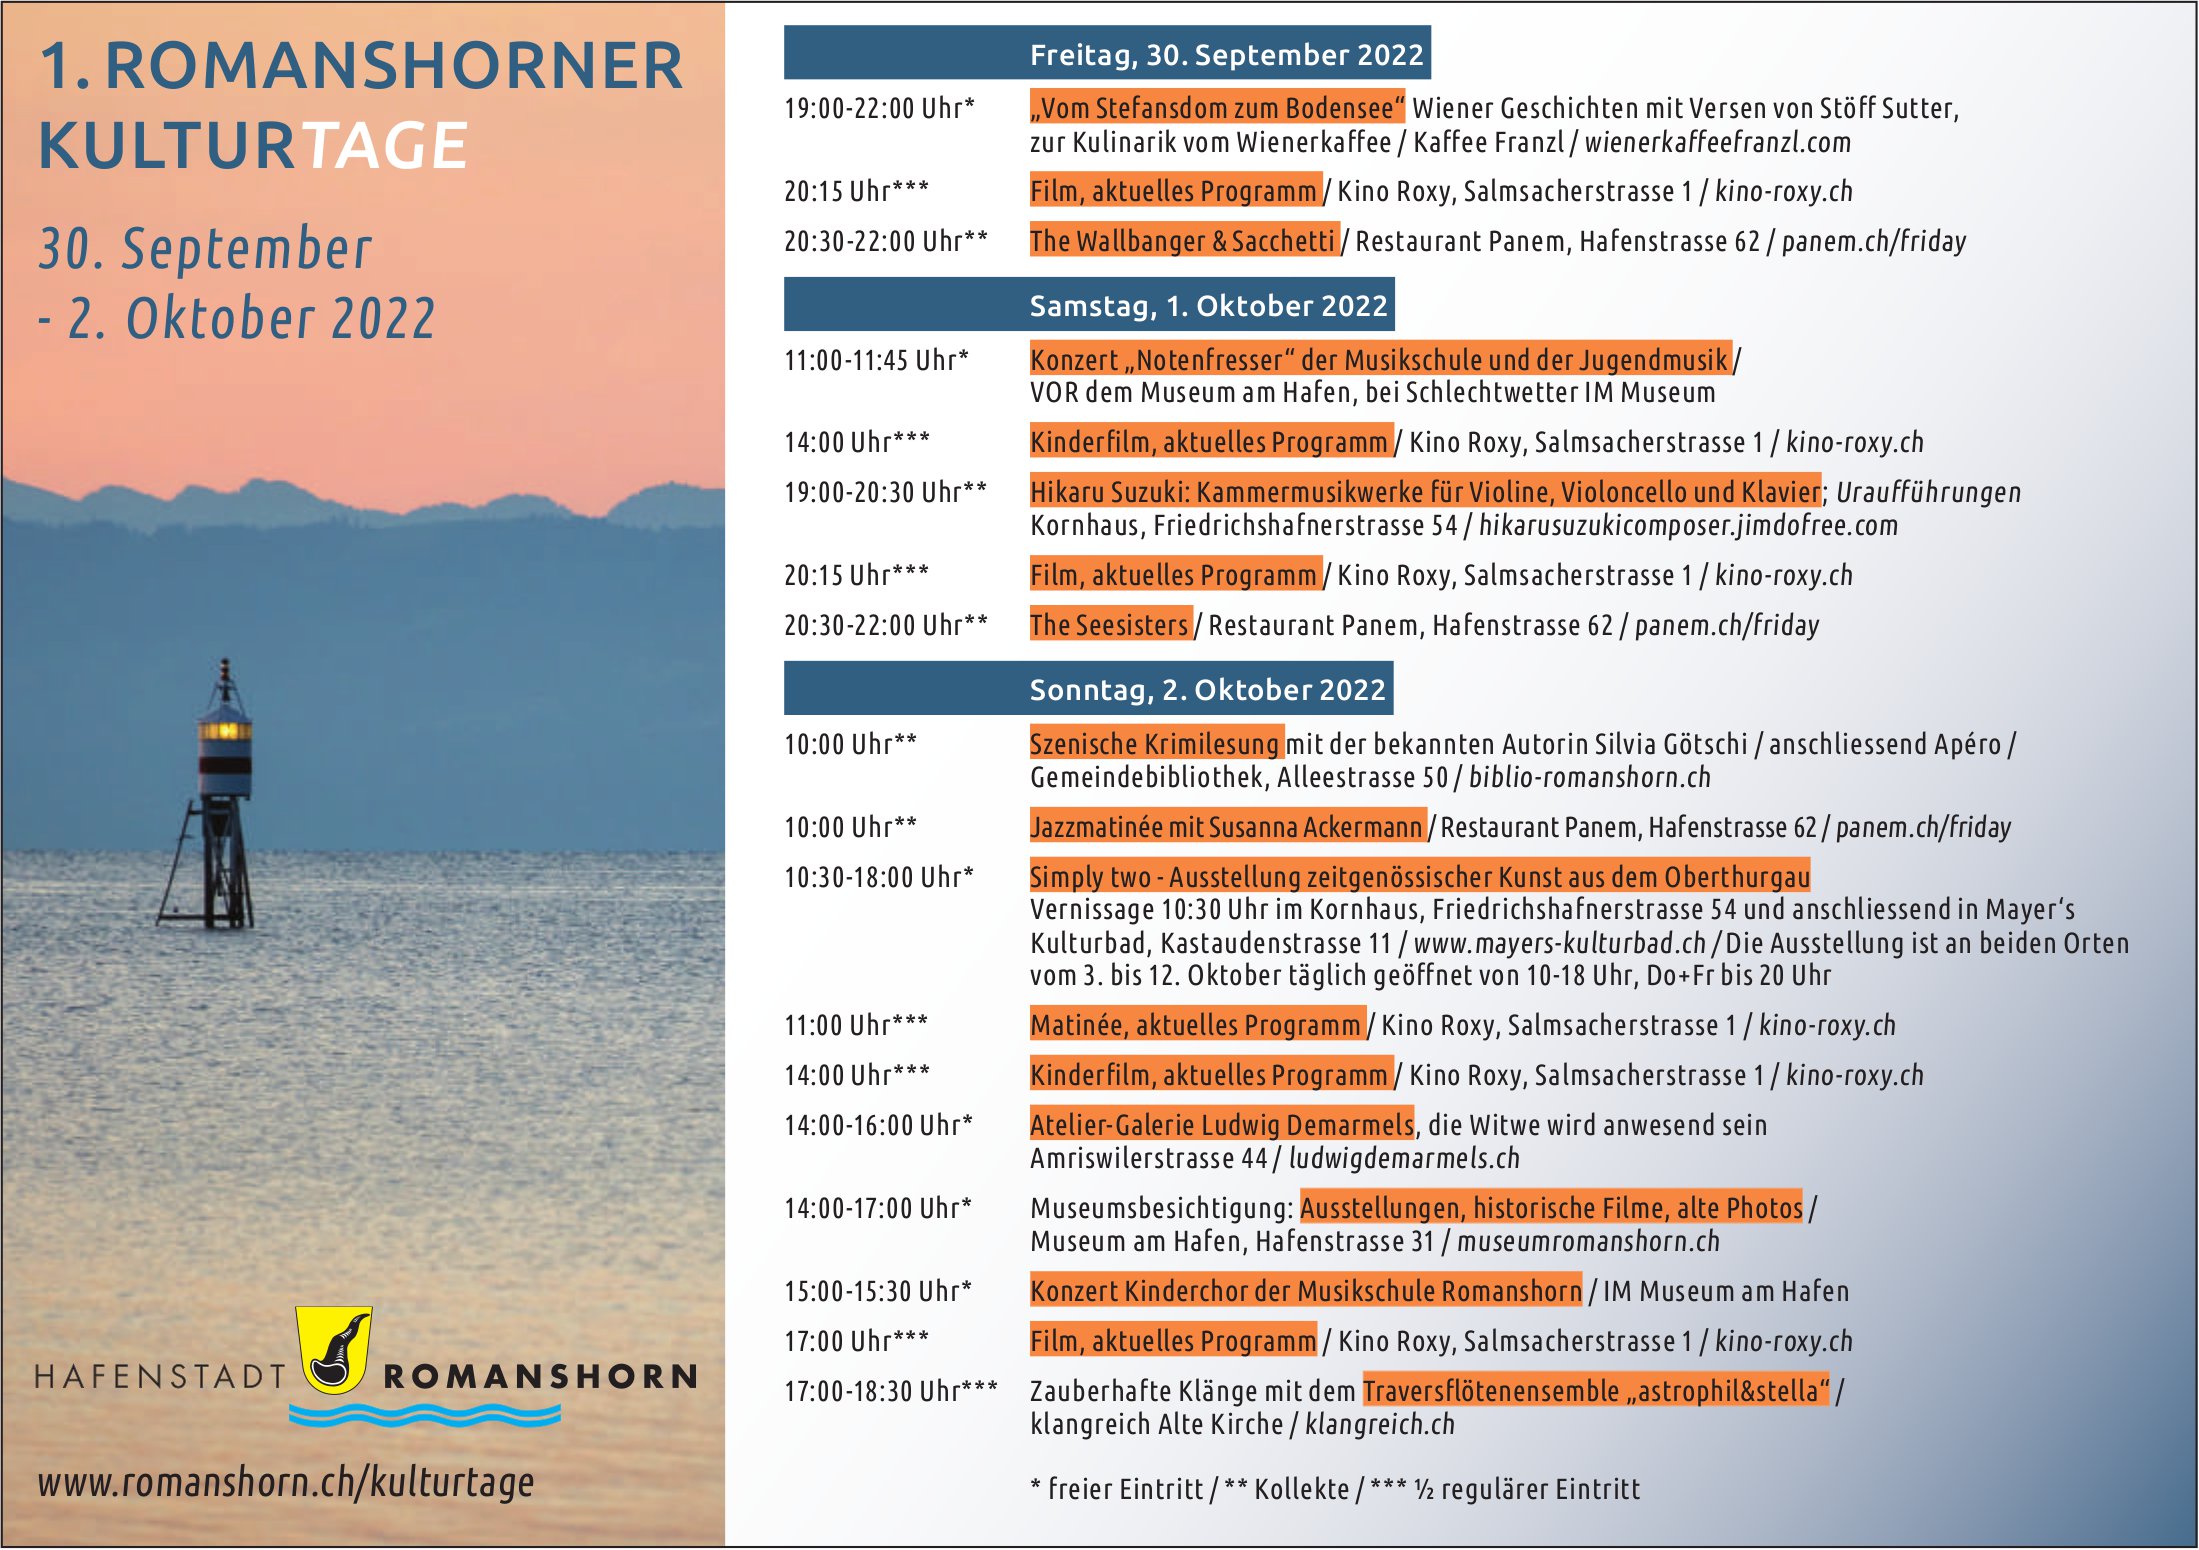 1. Romanshorner Kulturtage, 30. September -2. Oktober 2022, Romanshorn